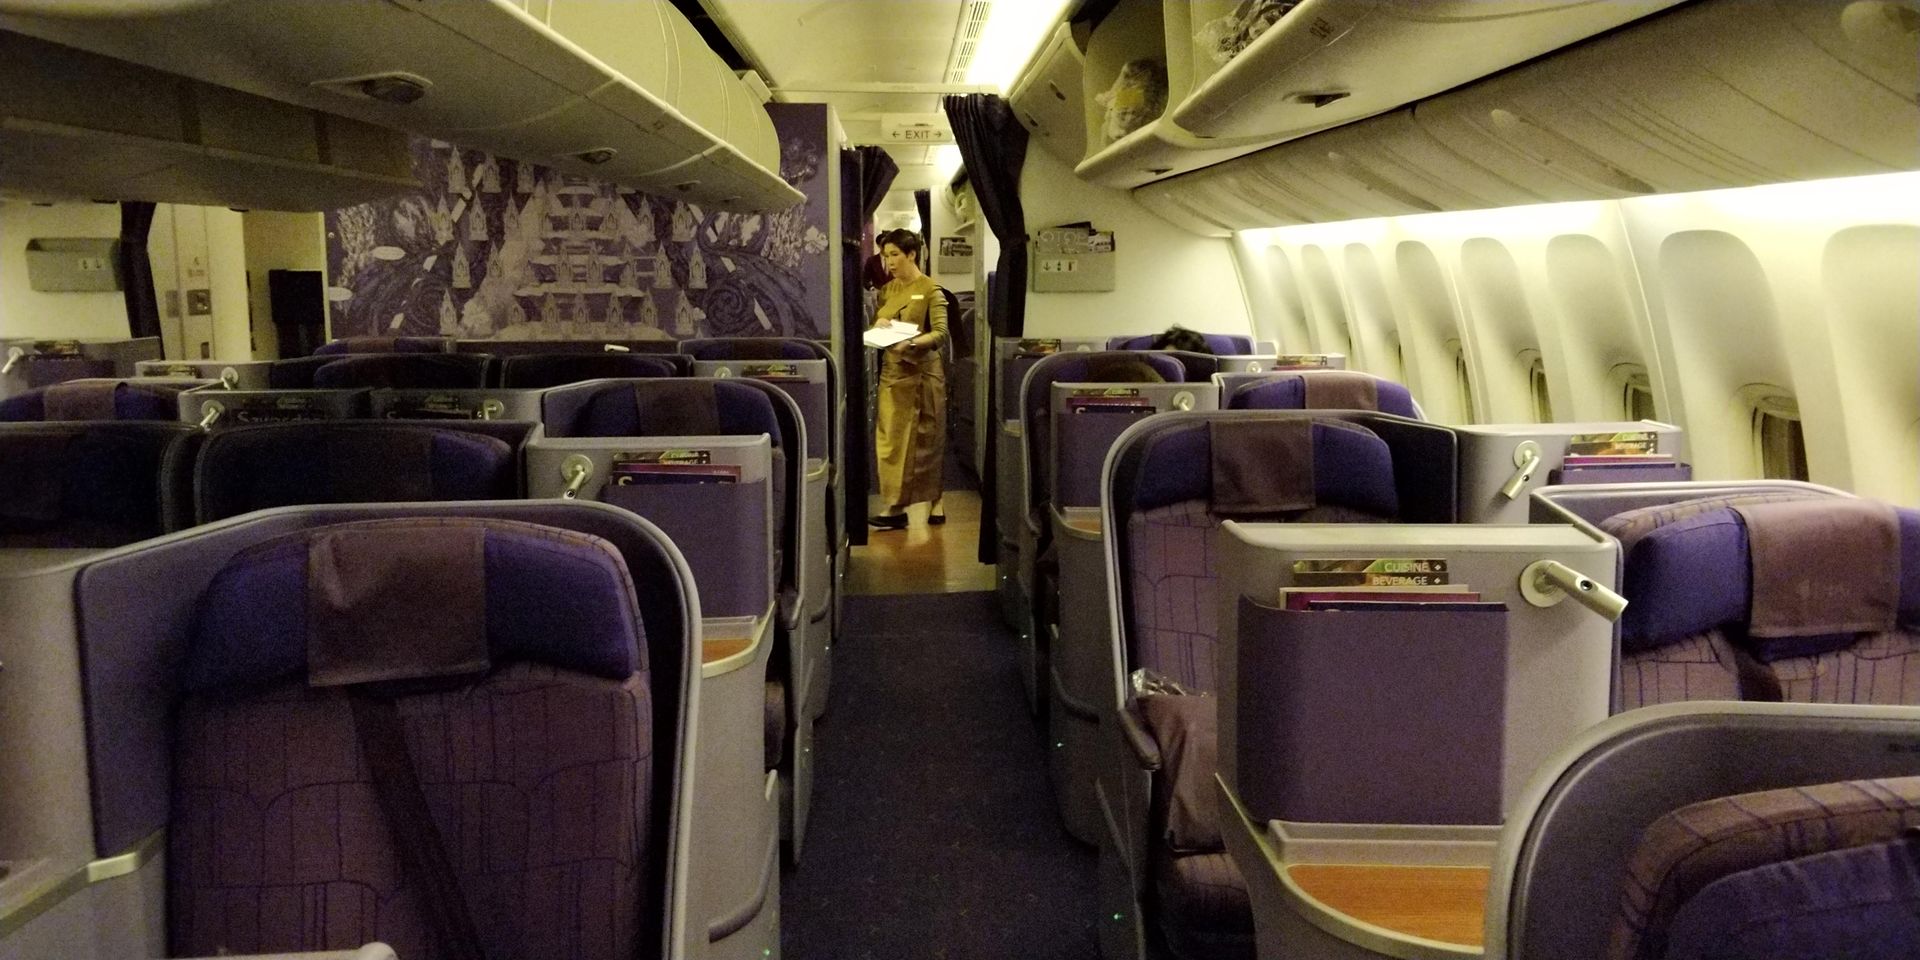 Thai Airways Business Class Boeing 777 Kabine